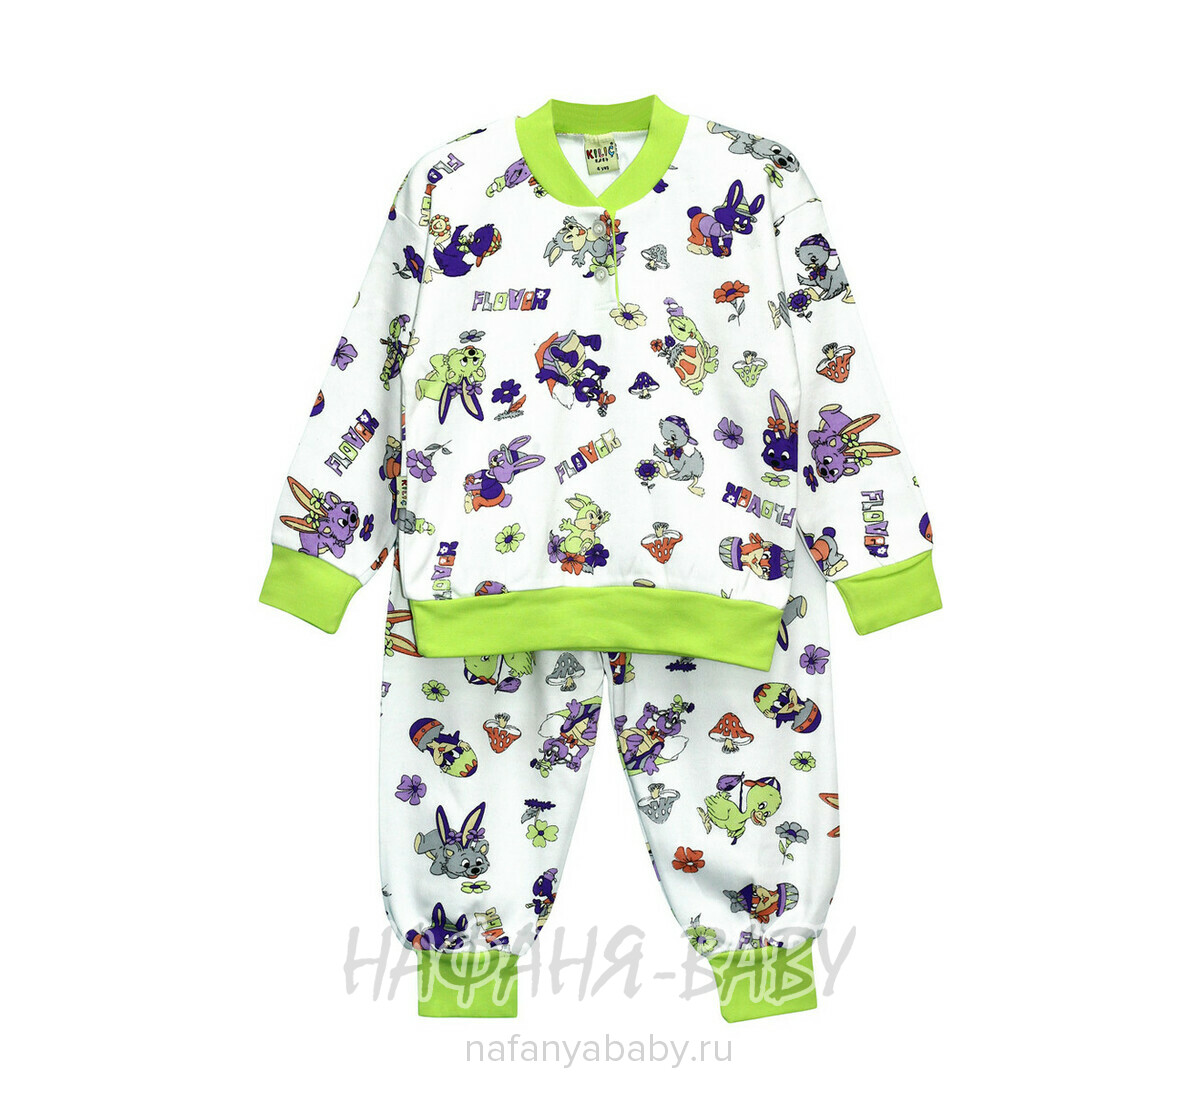 Детская пижама KILIG, купить в интернет магазине Нафаня. арт: 2140.